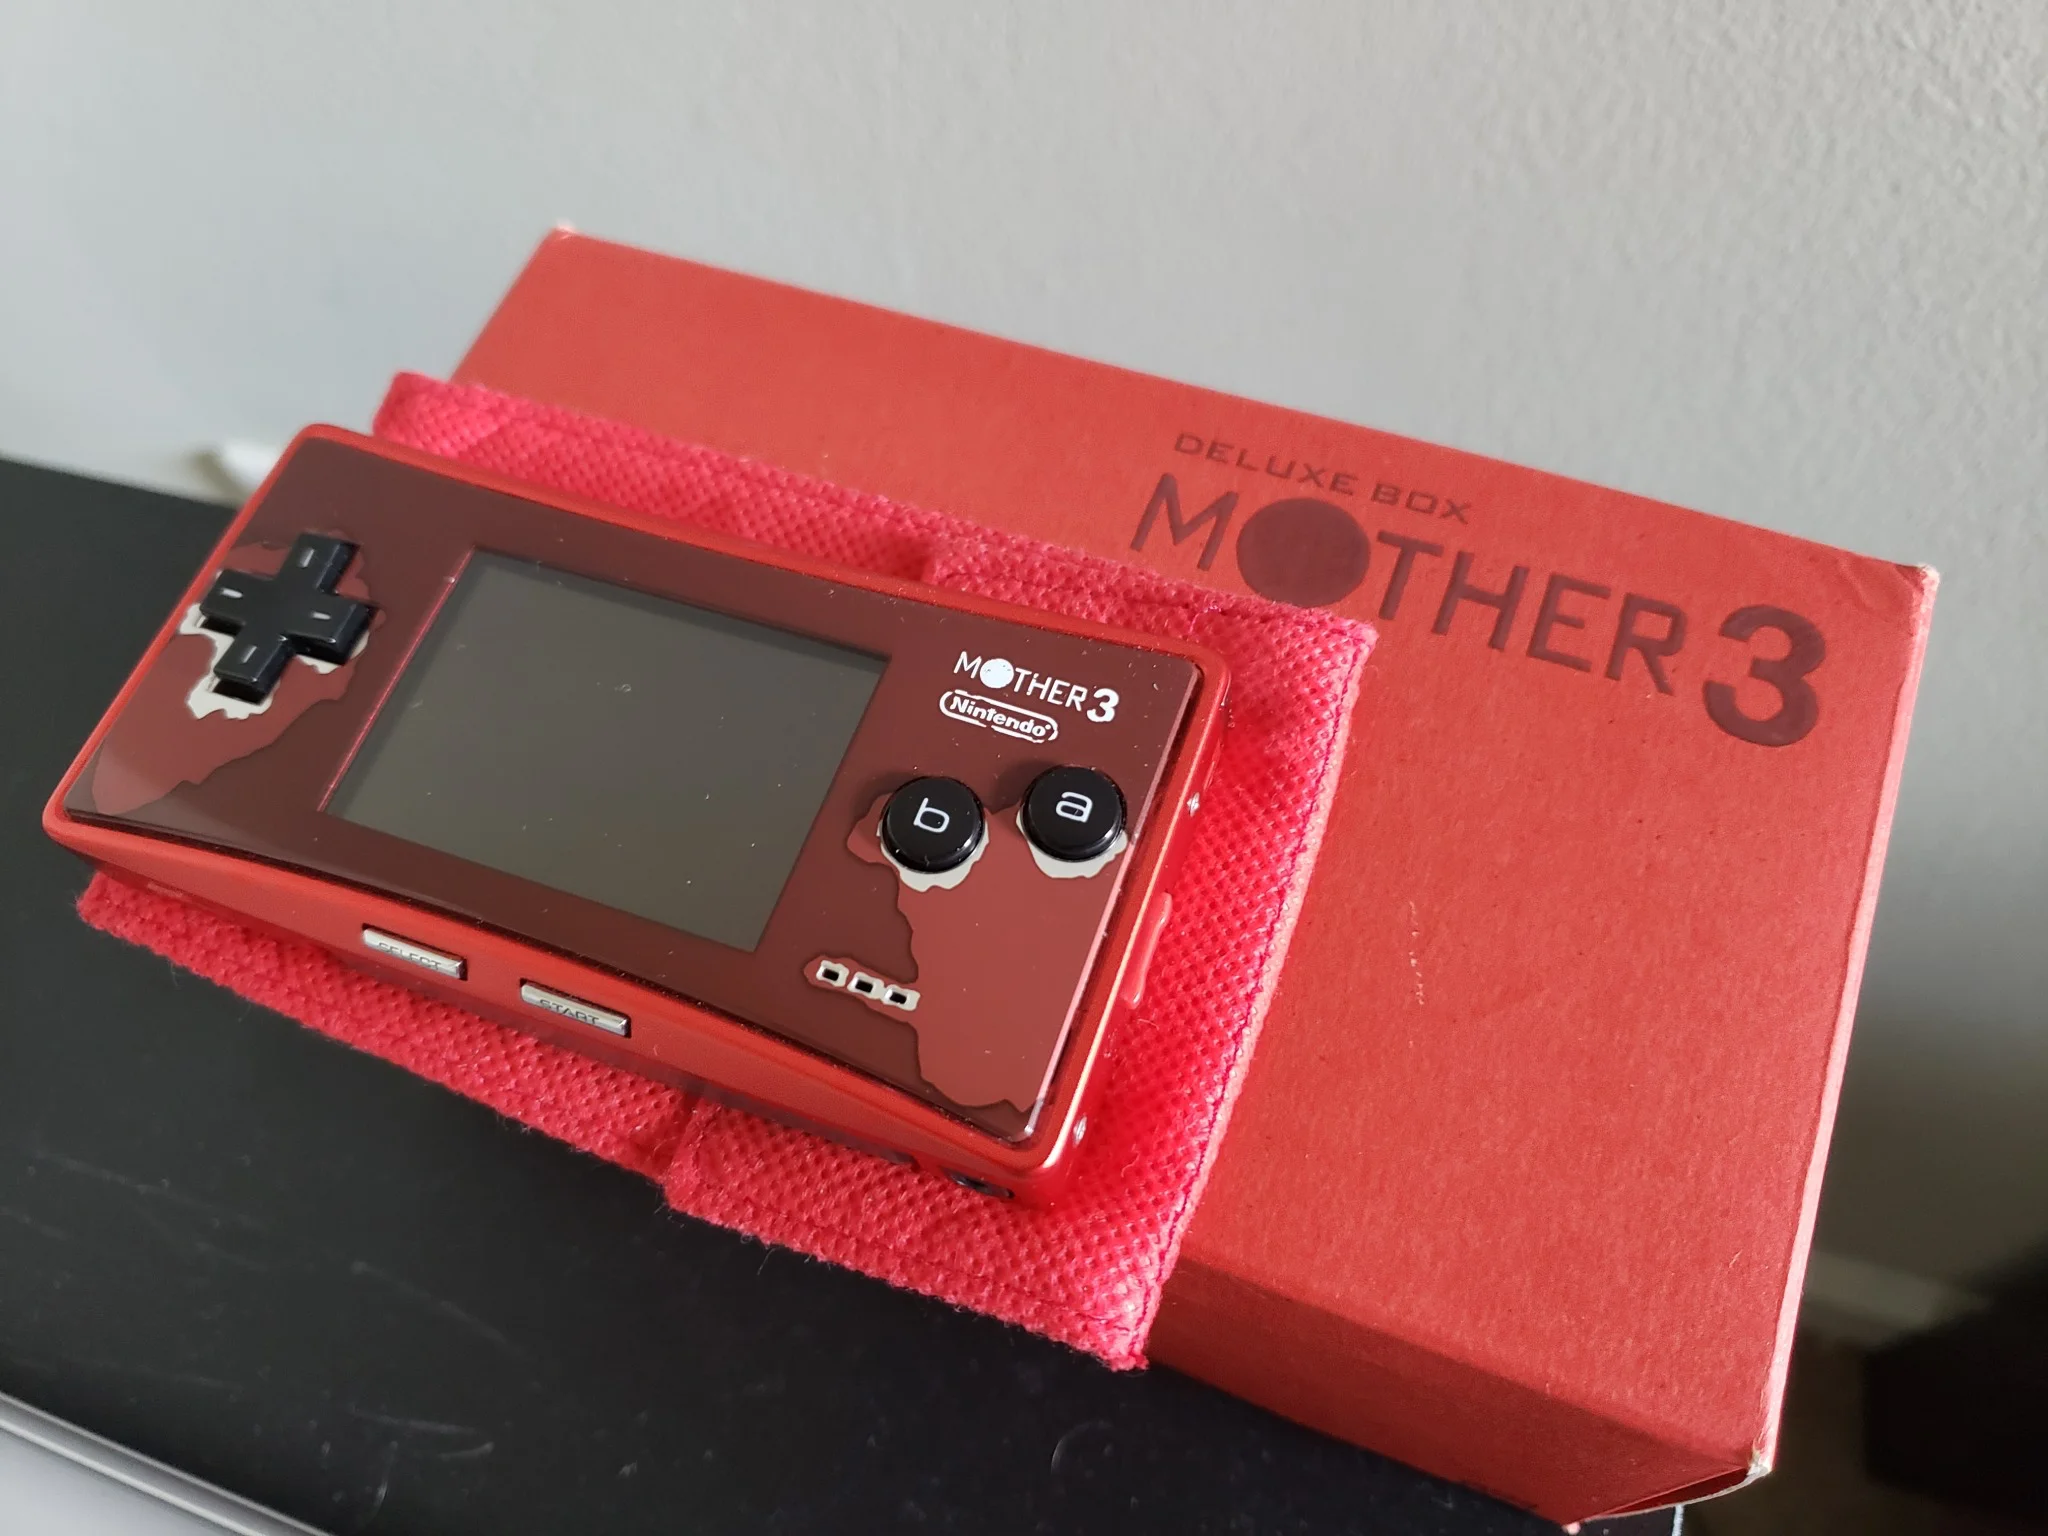  Nintendo Game Boy Micro Mother 3 Console